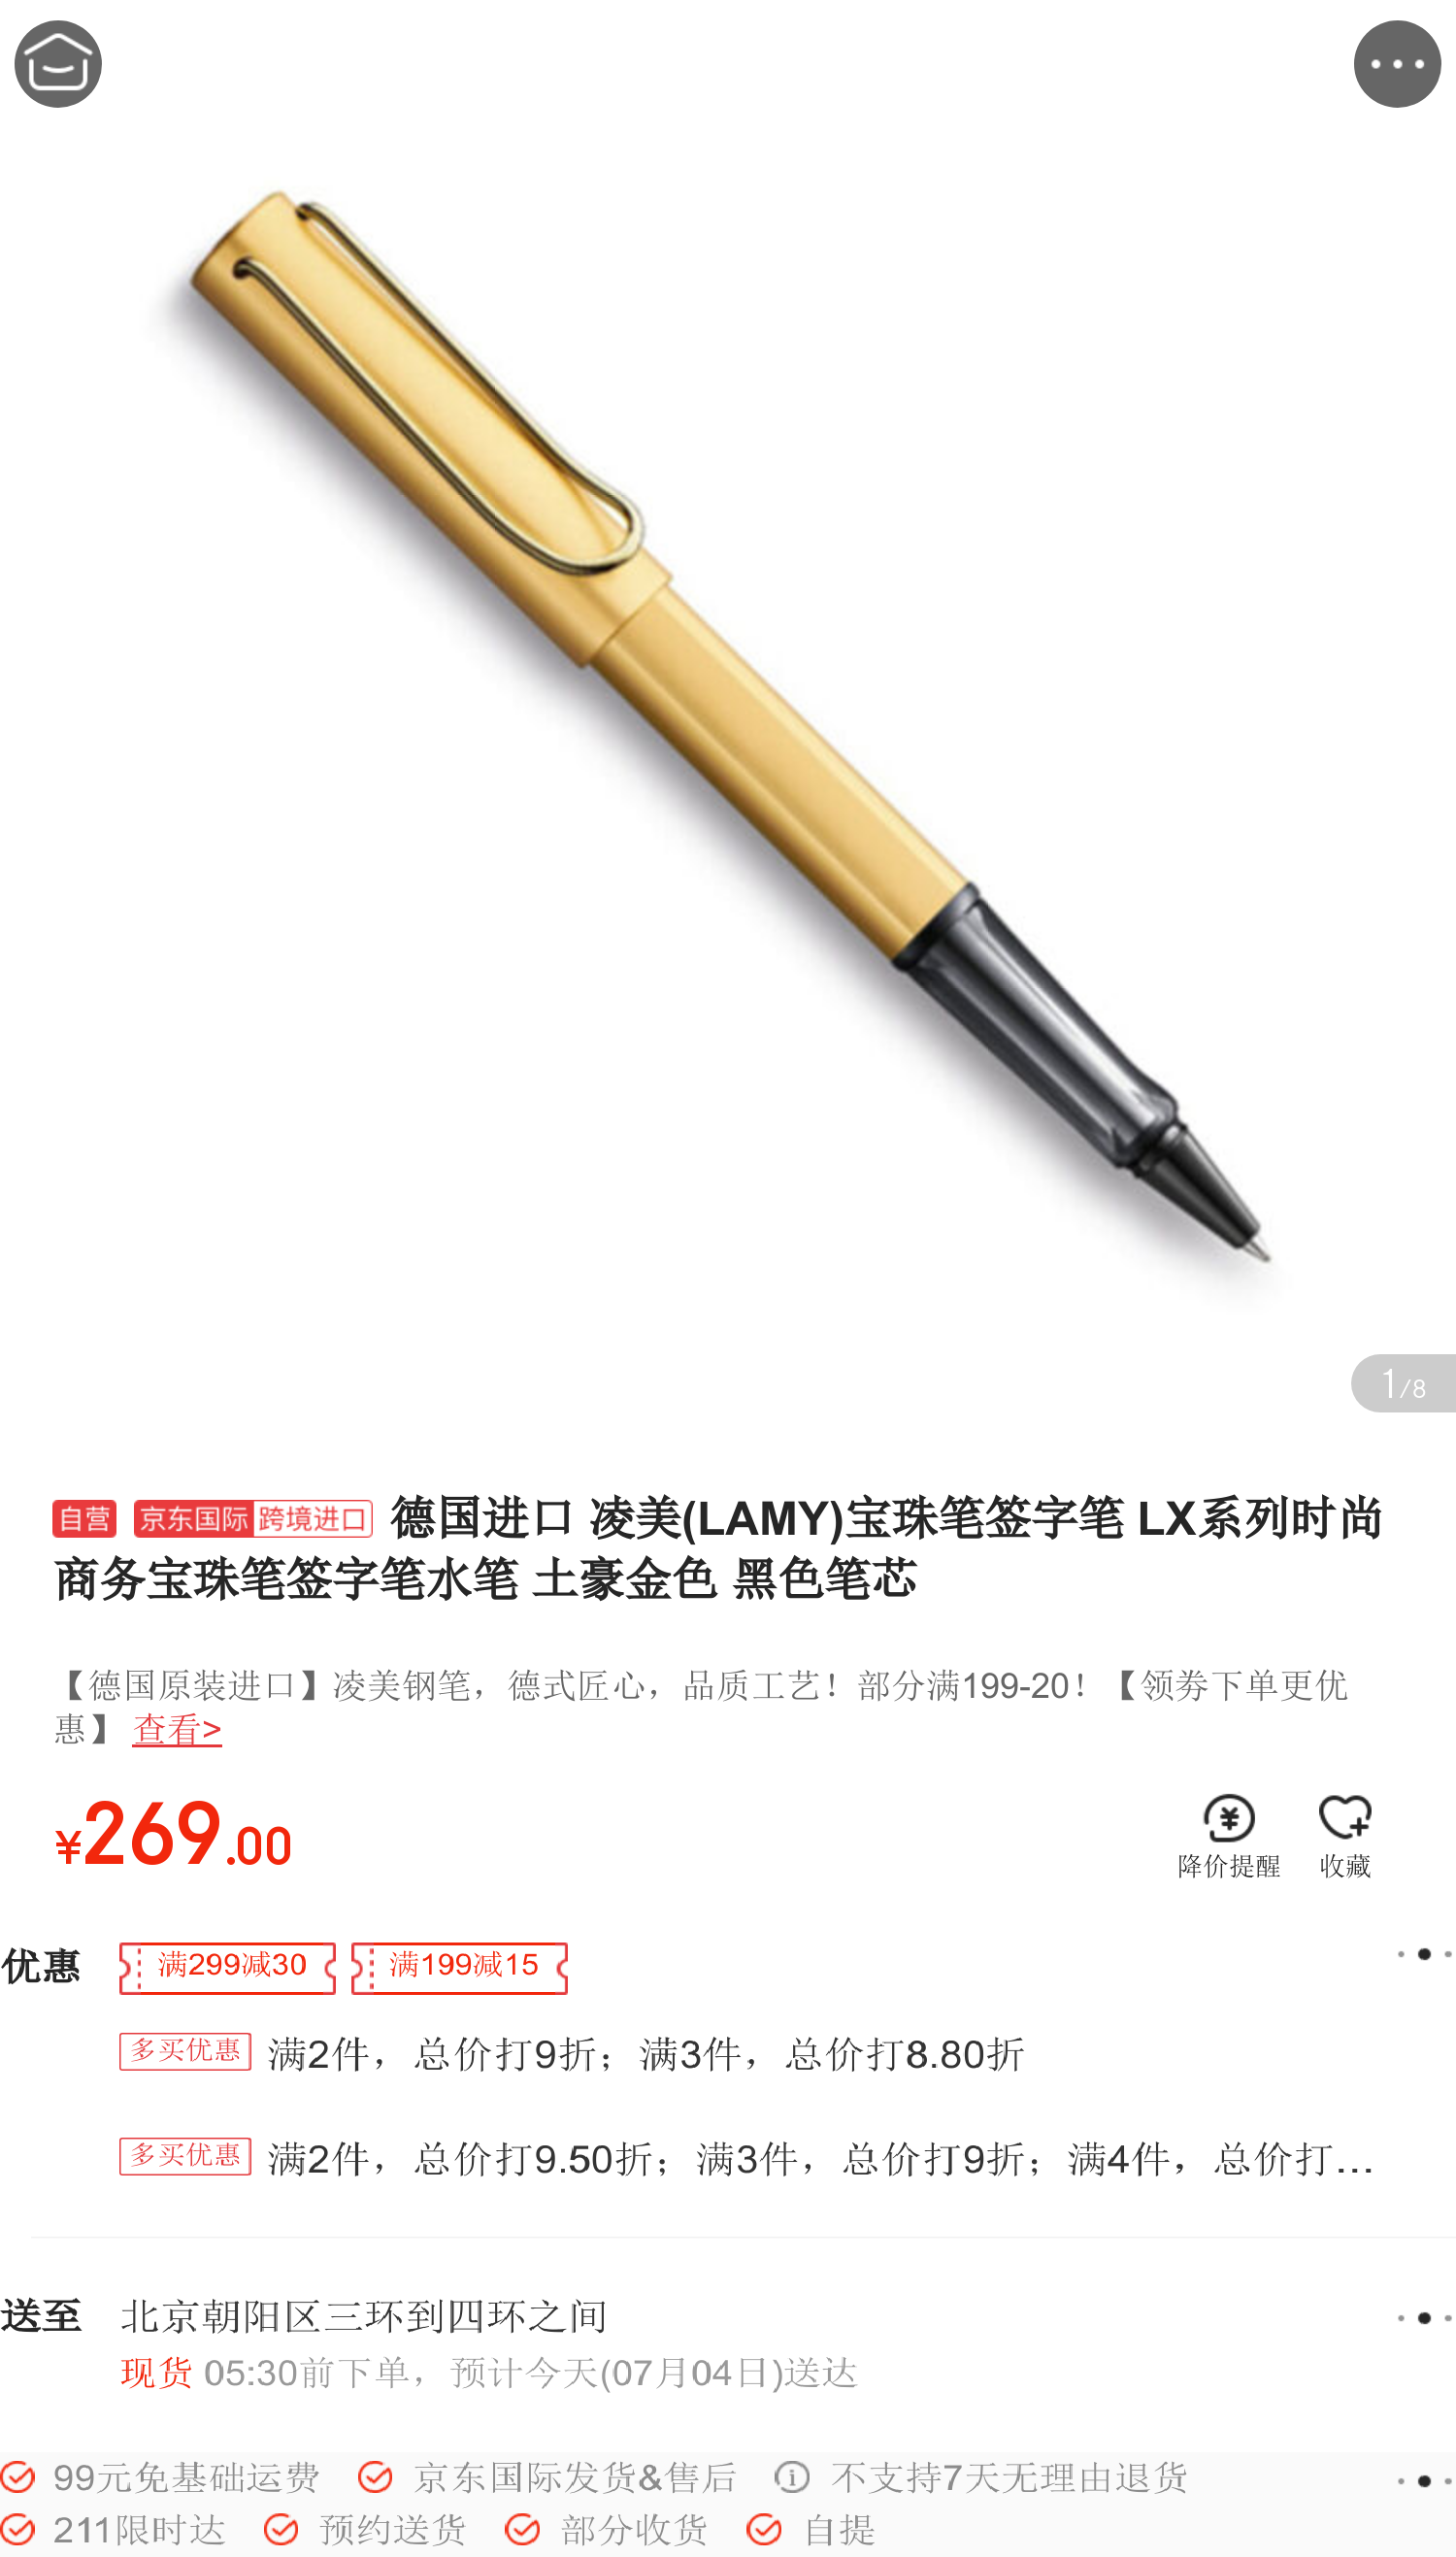 德国进口 凌美(lamy)宝珠笔签字笔 lx系列时尚商务宝珠笔签字笔水笔